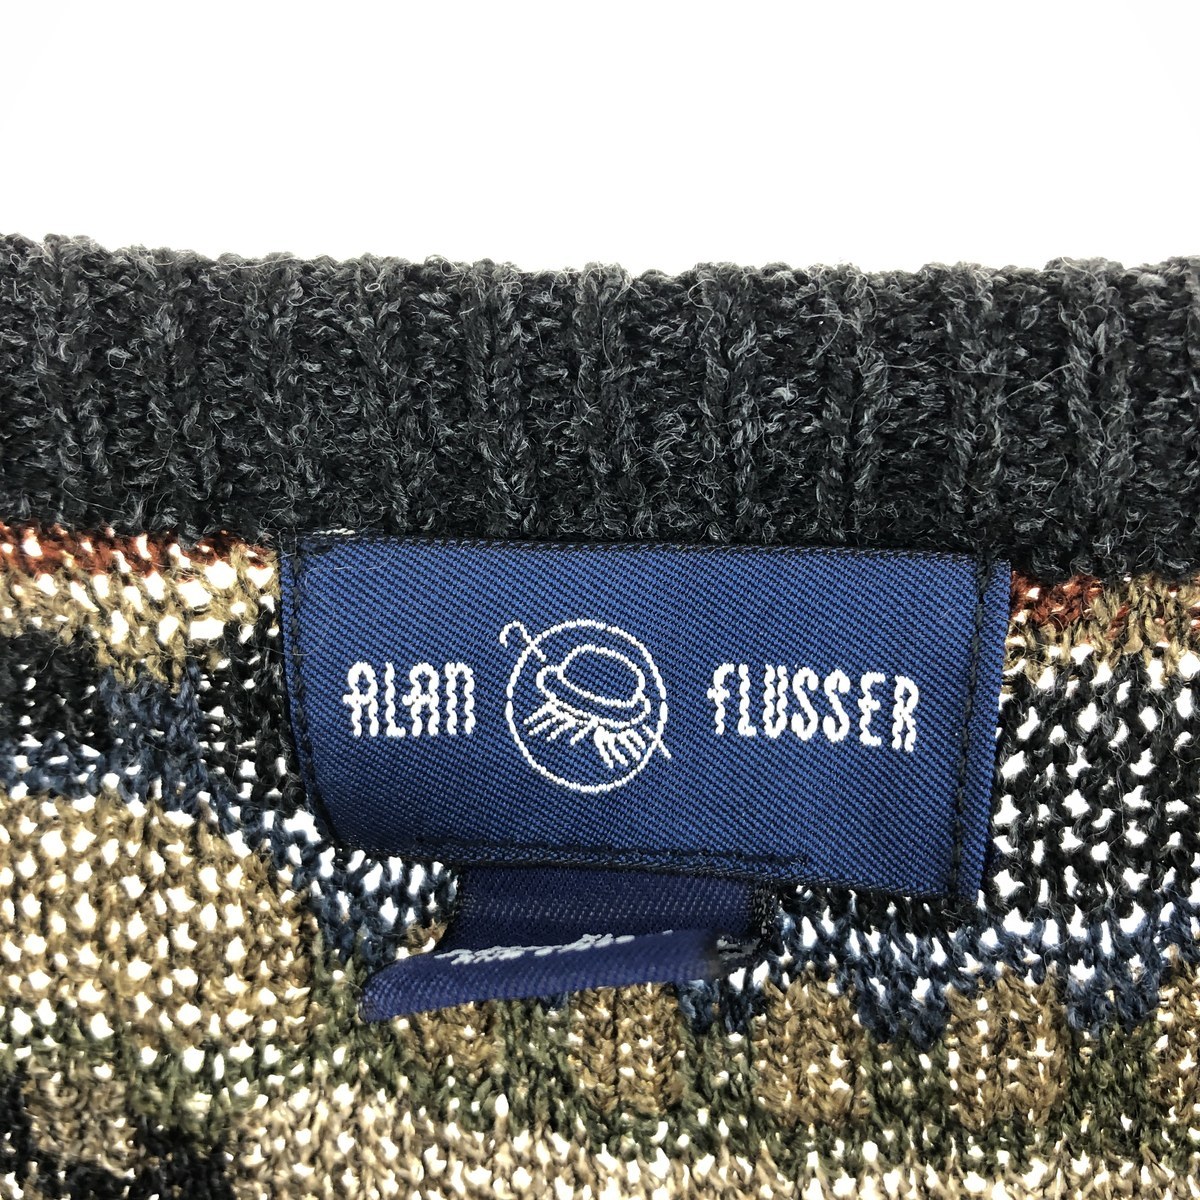  б/у одежда ALAN FLUSSER общий рисунок вязаный свитер USA мужской XL /eaa363194 [SS2403]